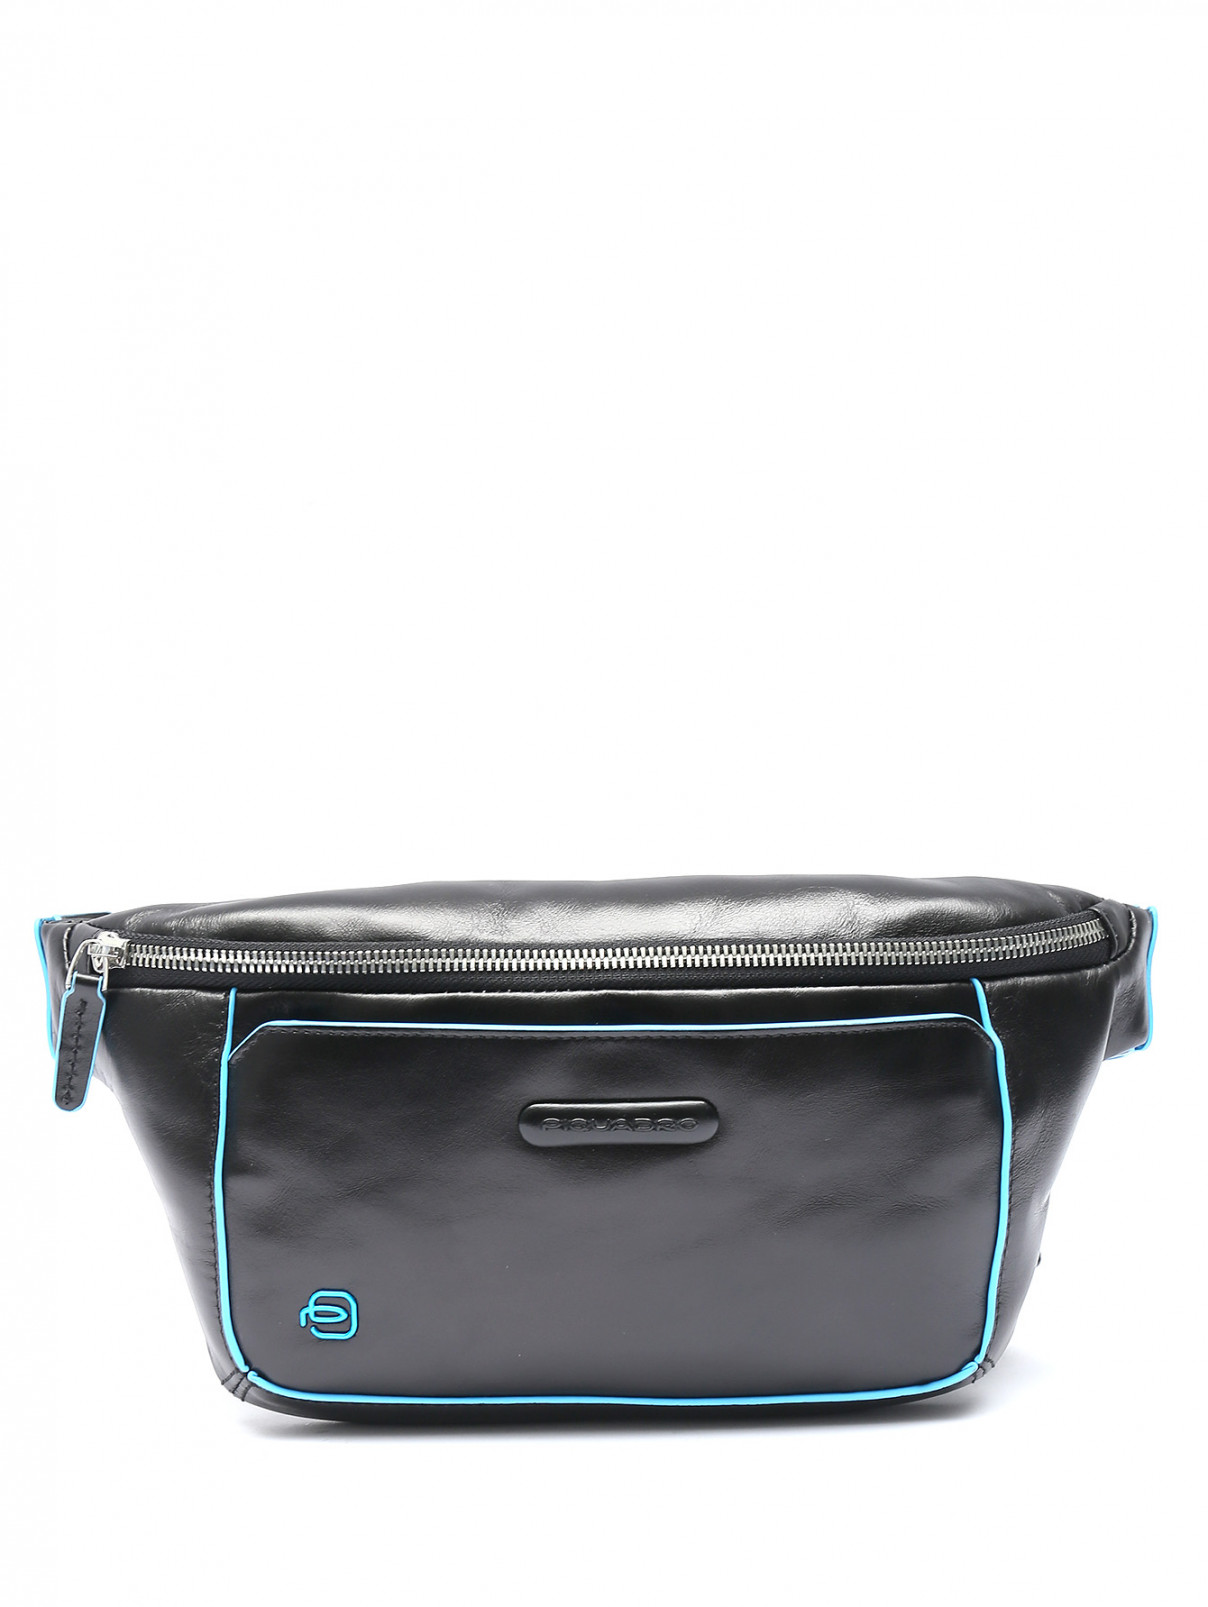 Поясная сумка из гладкой кожи с контрастной отделкой Piquadro  –  Общий вид  – Цвет:  Черный